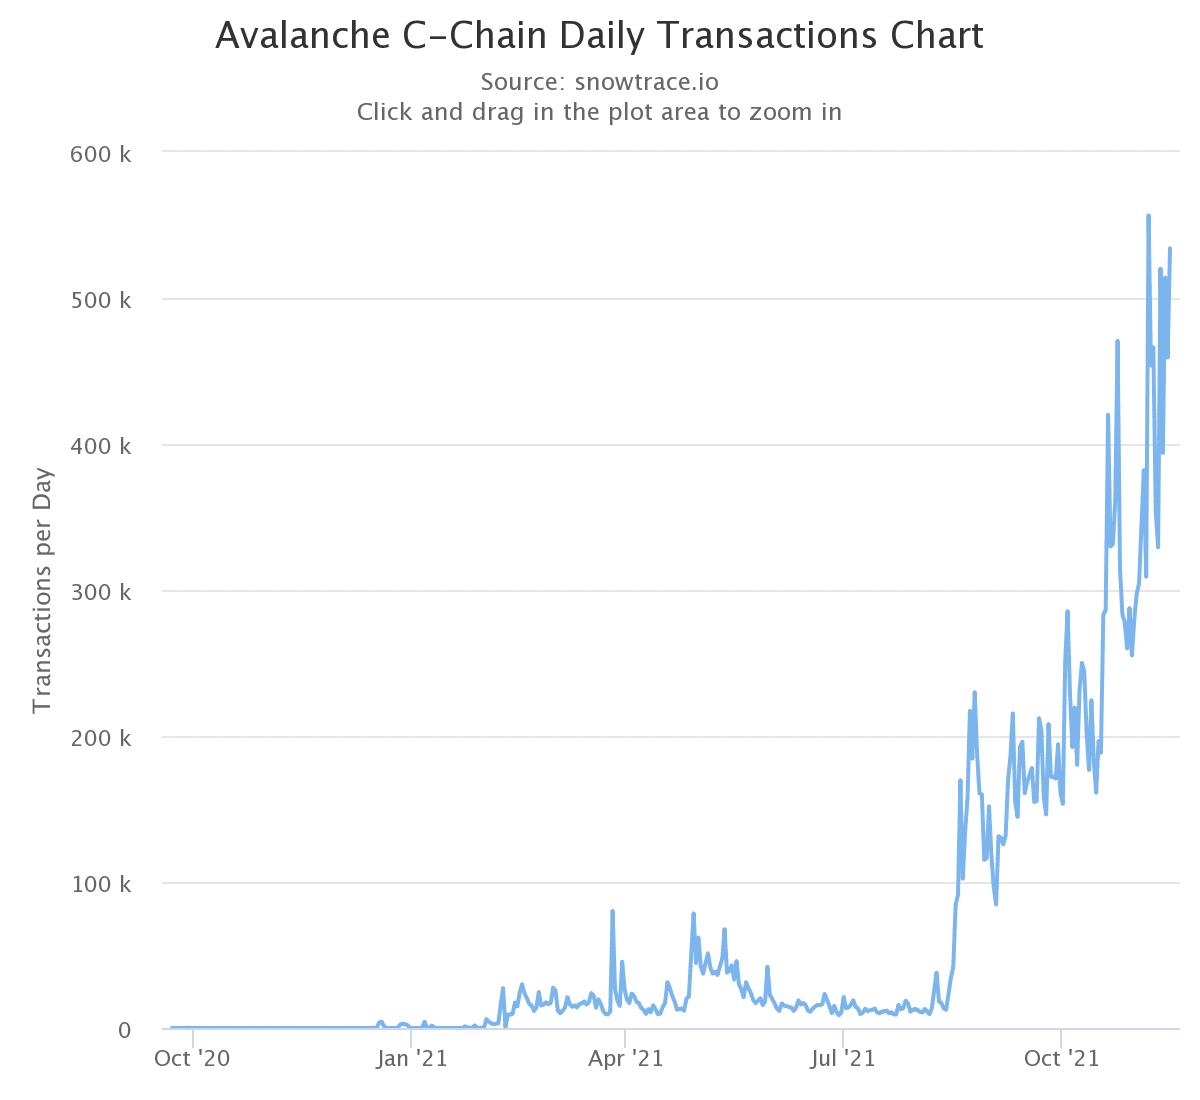 Graphique montrant le nombre de transactions quotidiennes sur la C-Chain d'Avalanche (Source : SnowTrace)